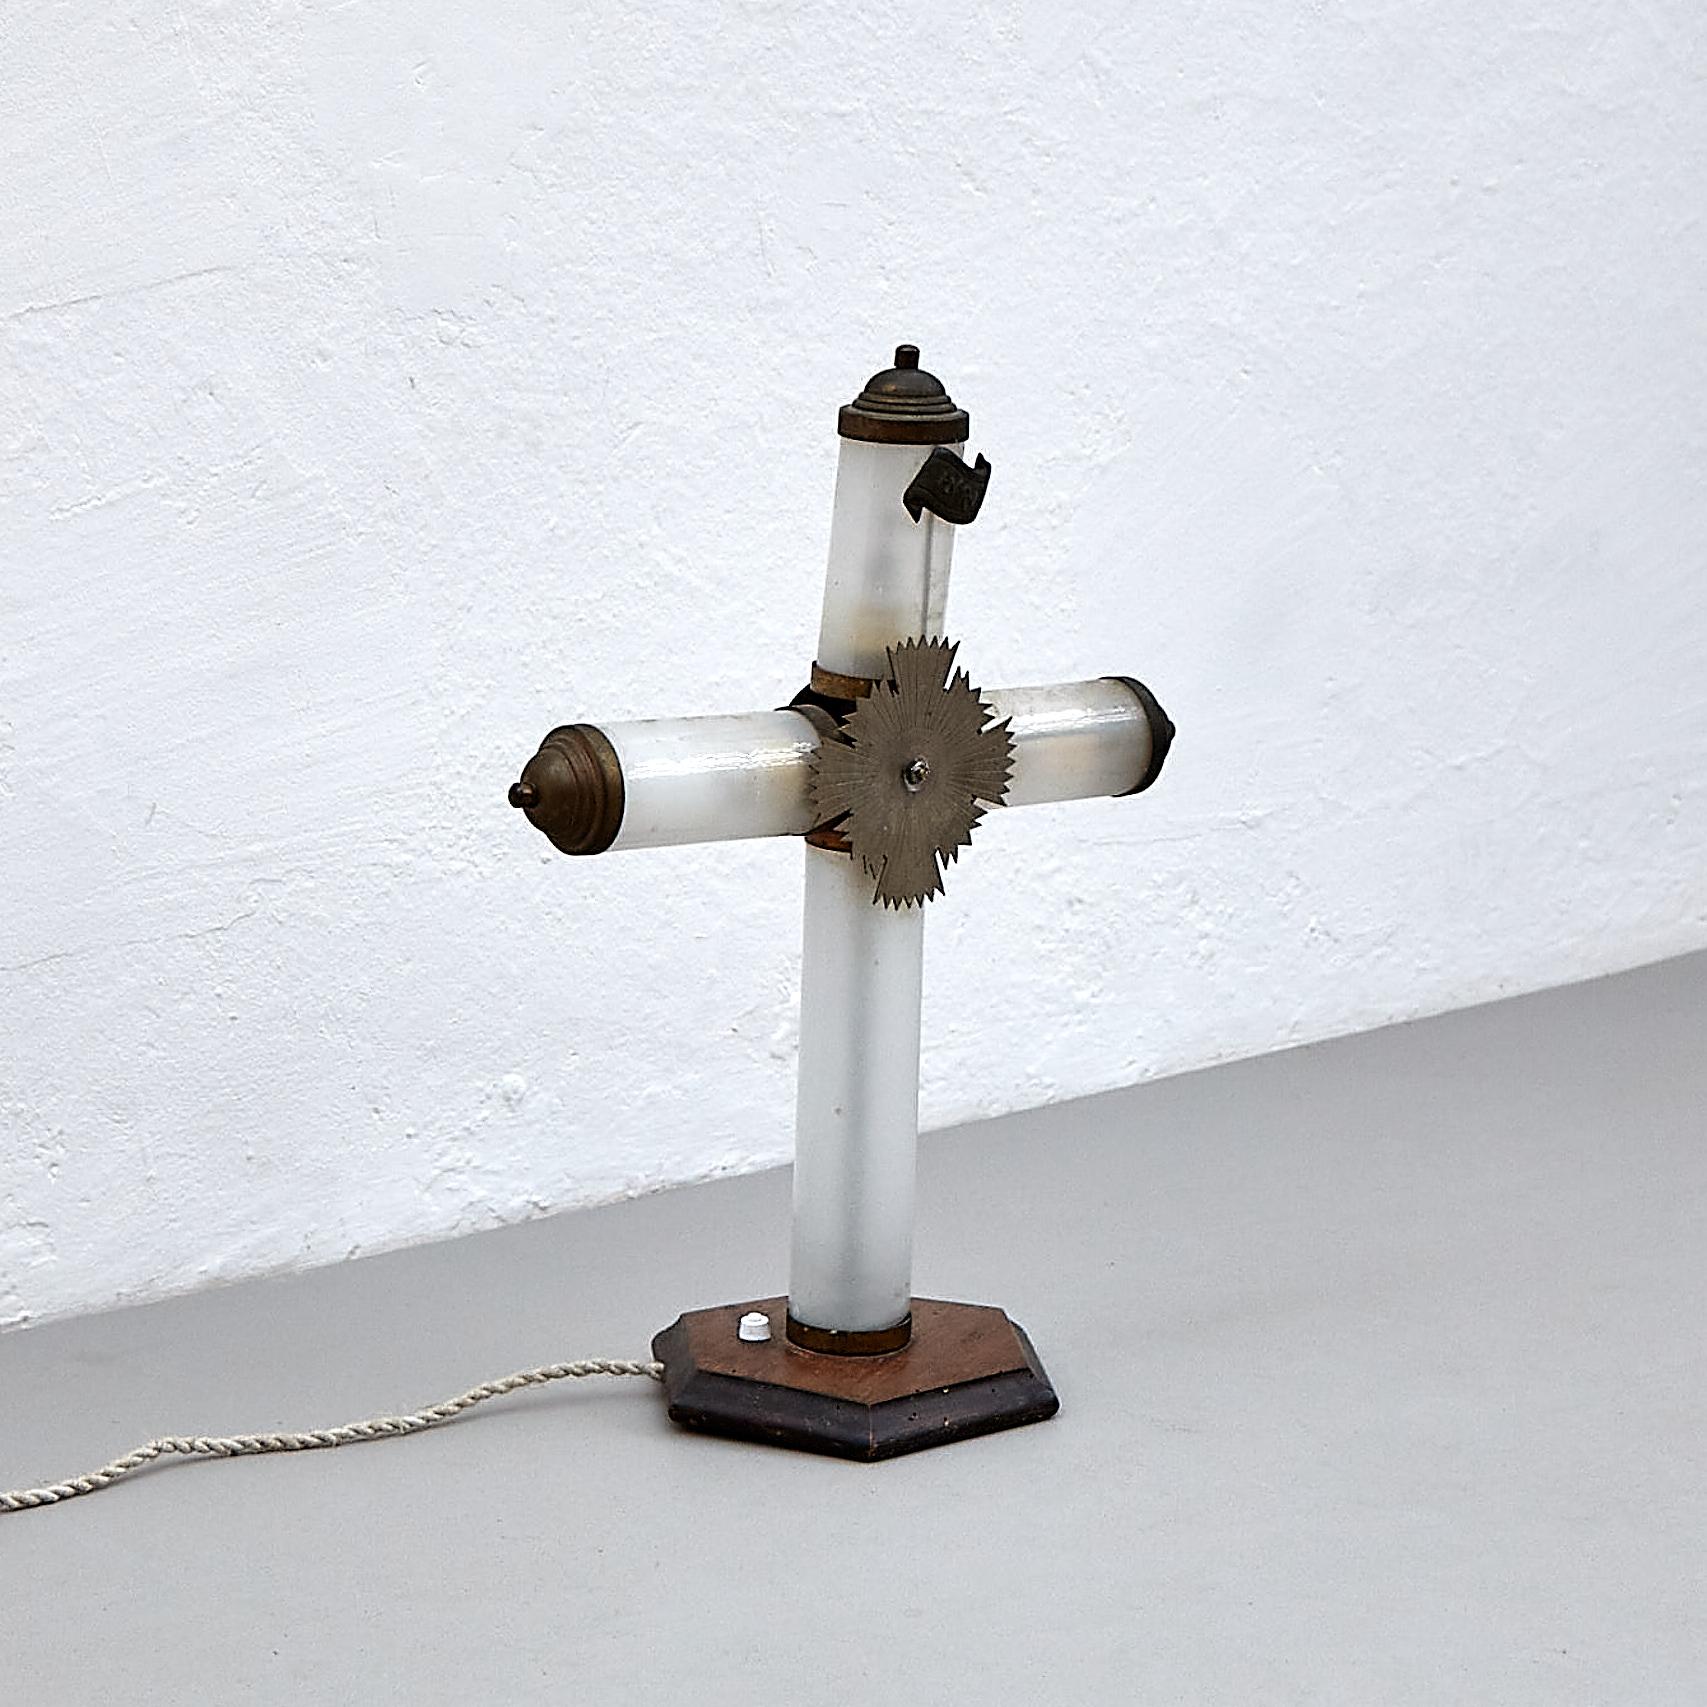 Religiöse Tischlampe aus dem frühen 20. Jahrhundert.

Hergestellt in Frankreich, um 1940.

In ursprünglichem Zustand mit geringen Gebrauchsspuren, die dem Alter und dem Gebrauch entsprechen, wobei eine schöne Patina erhalten